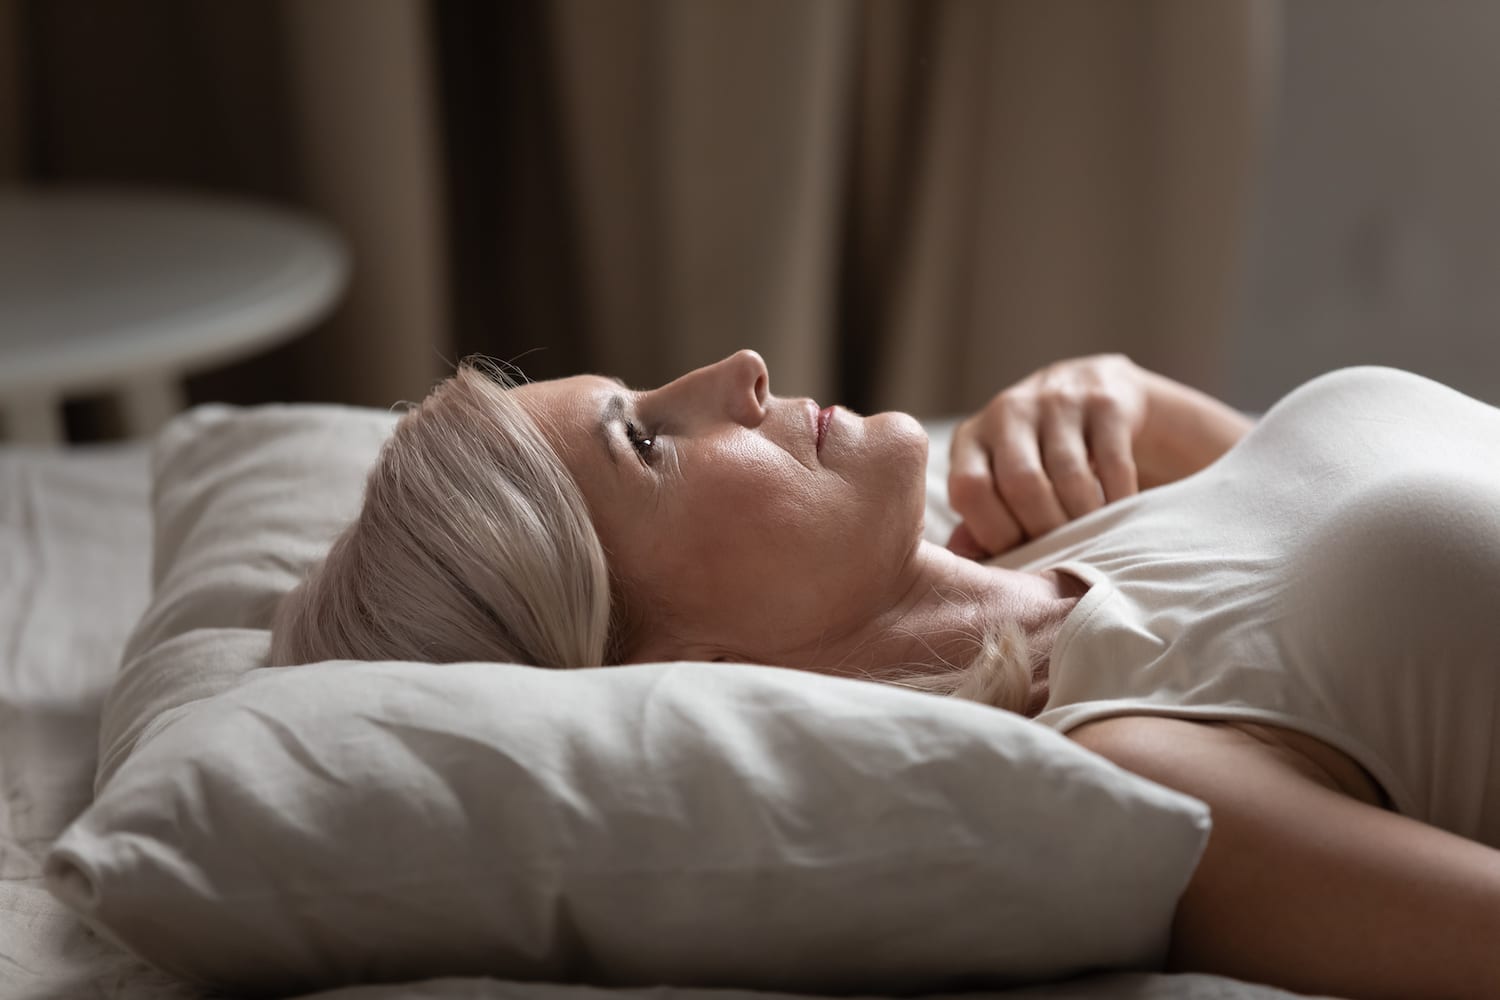 How Women's Sleep Changes Across the Lifespan